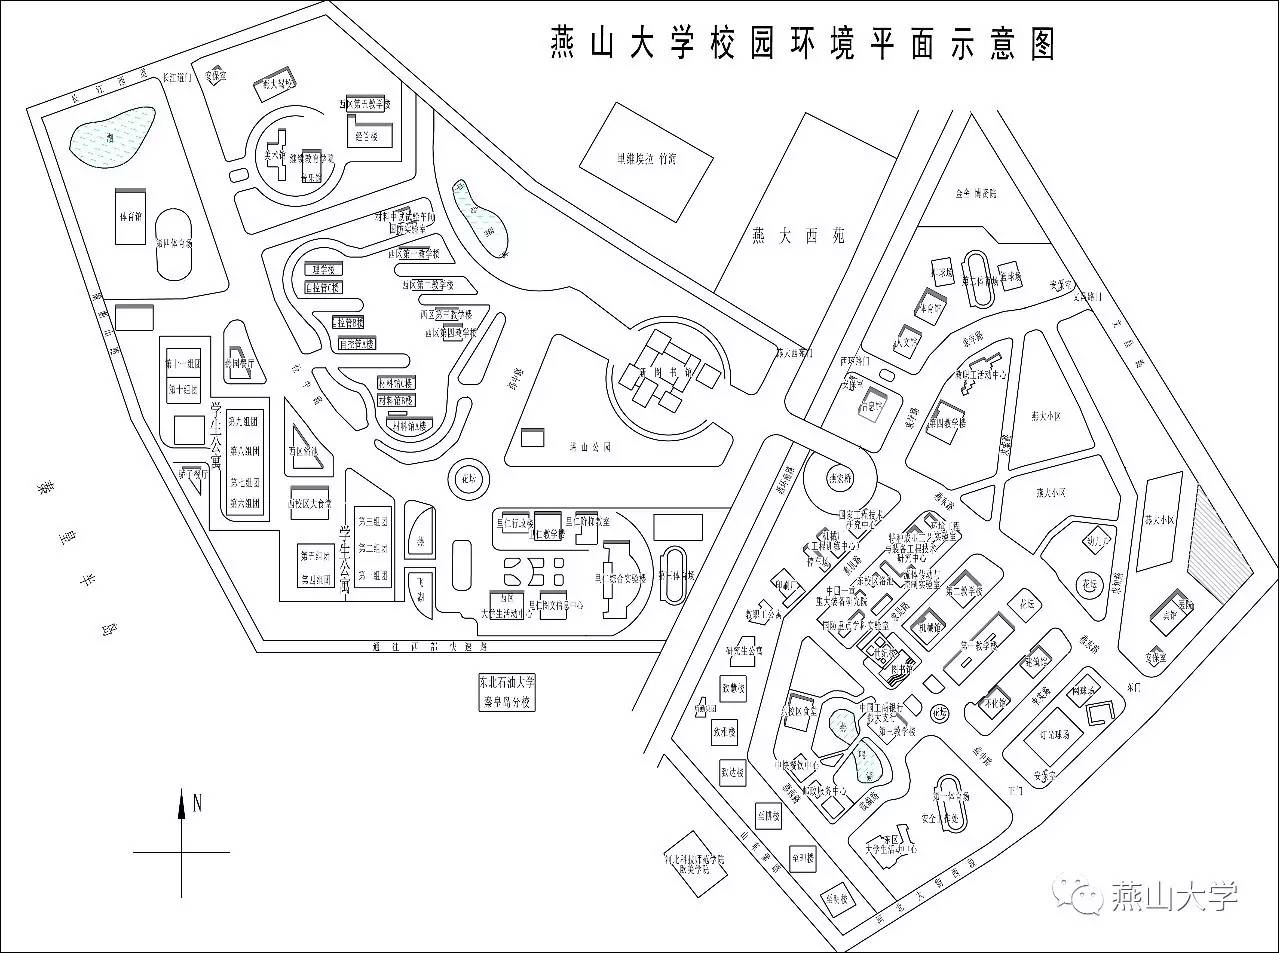 燕山大学里仁学院地图图片